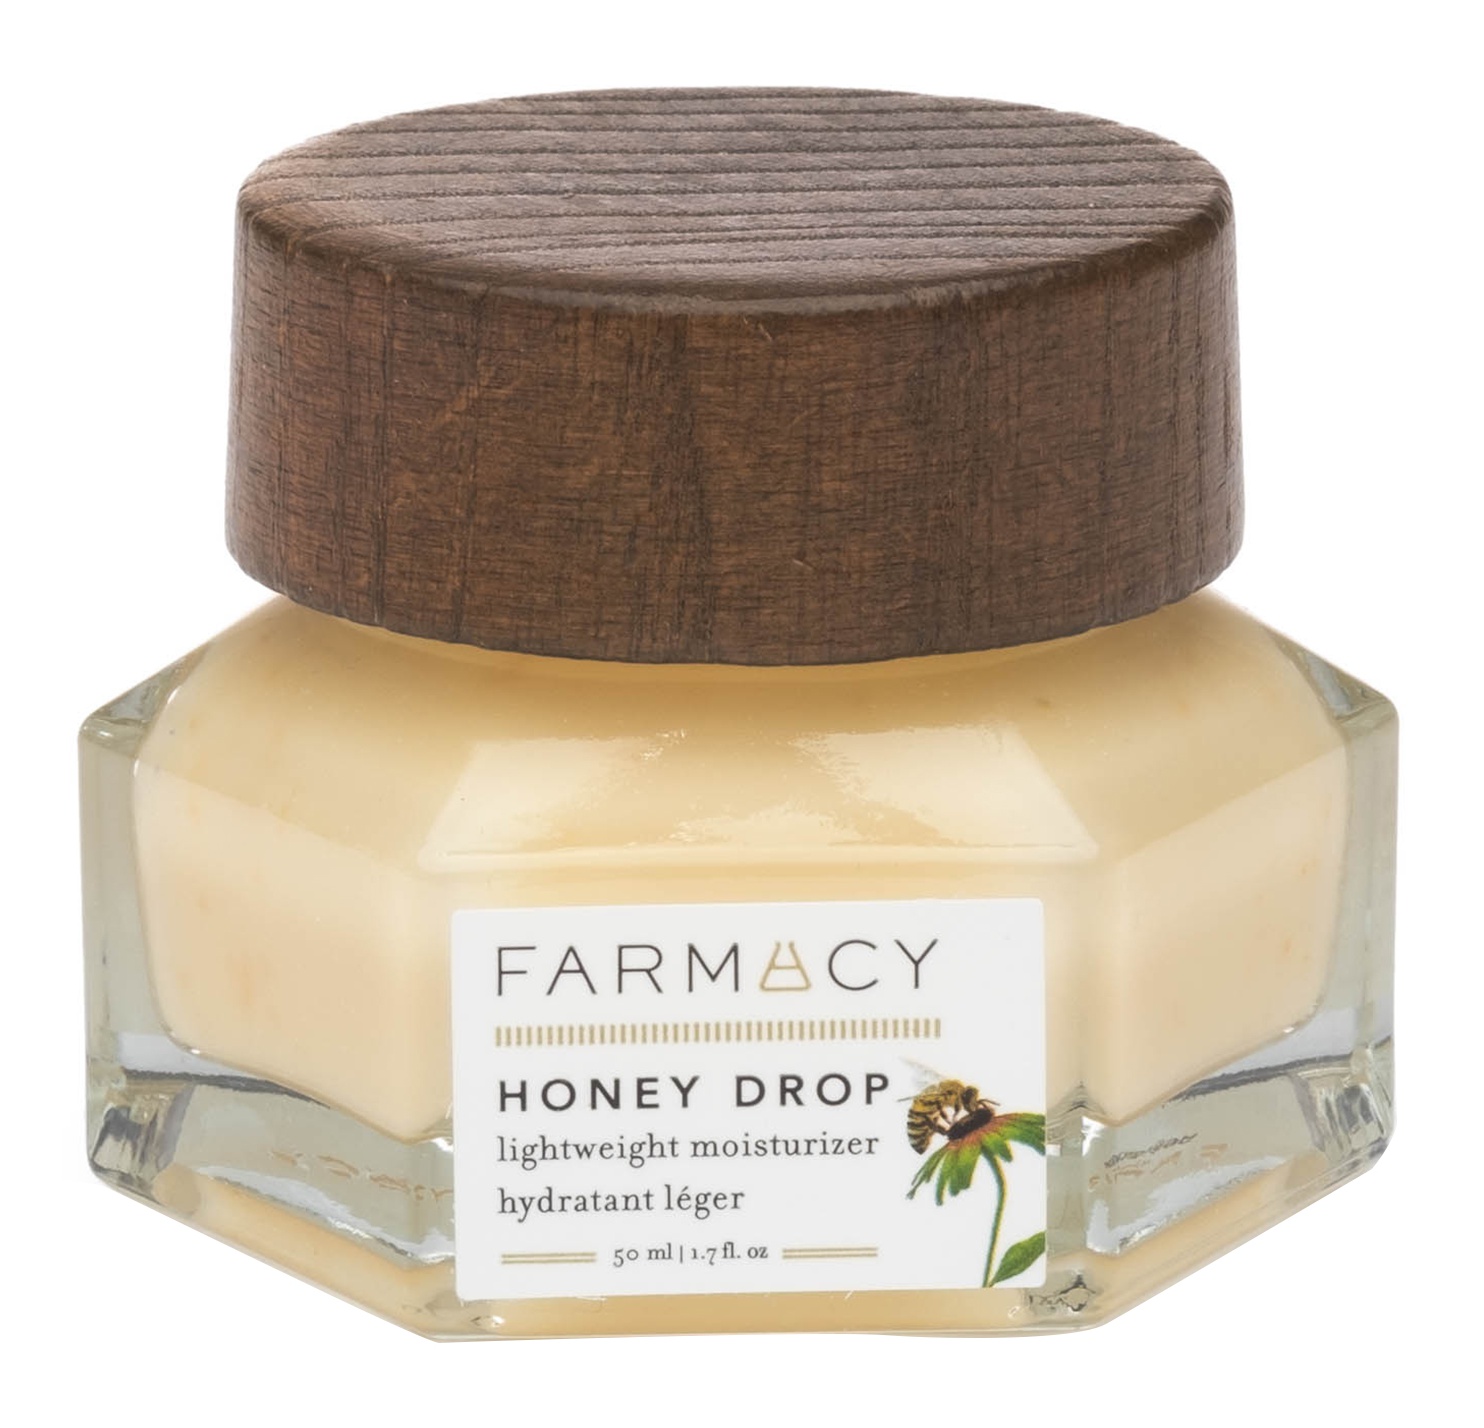 Farmacy Honey Drop Lightweight Moisturiser